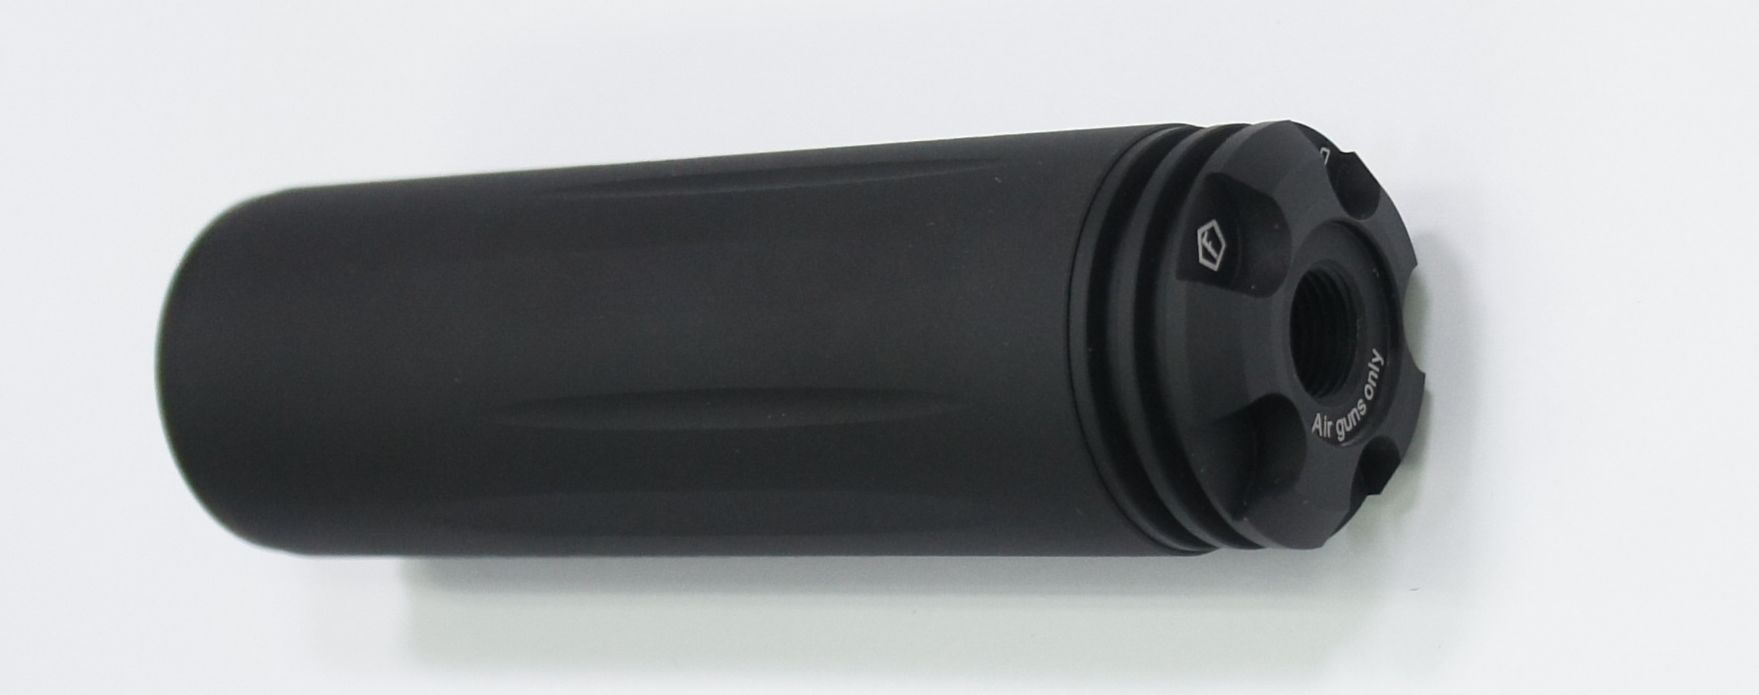 Schalldämpfer Modell Moderator XL-K der Marke Weihrauch mit Innengewinde 0,5 Zoll UNF